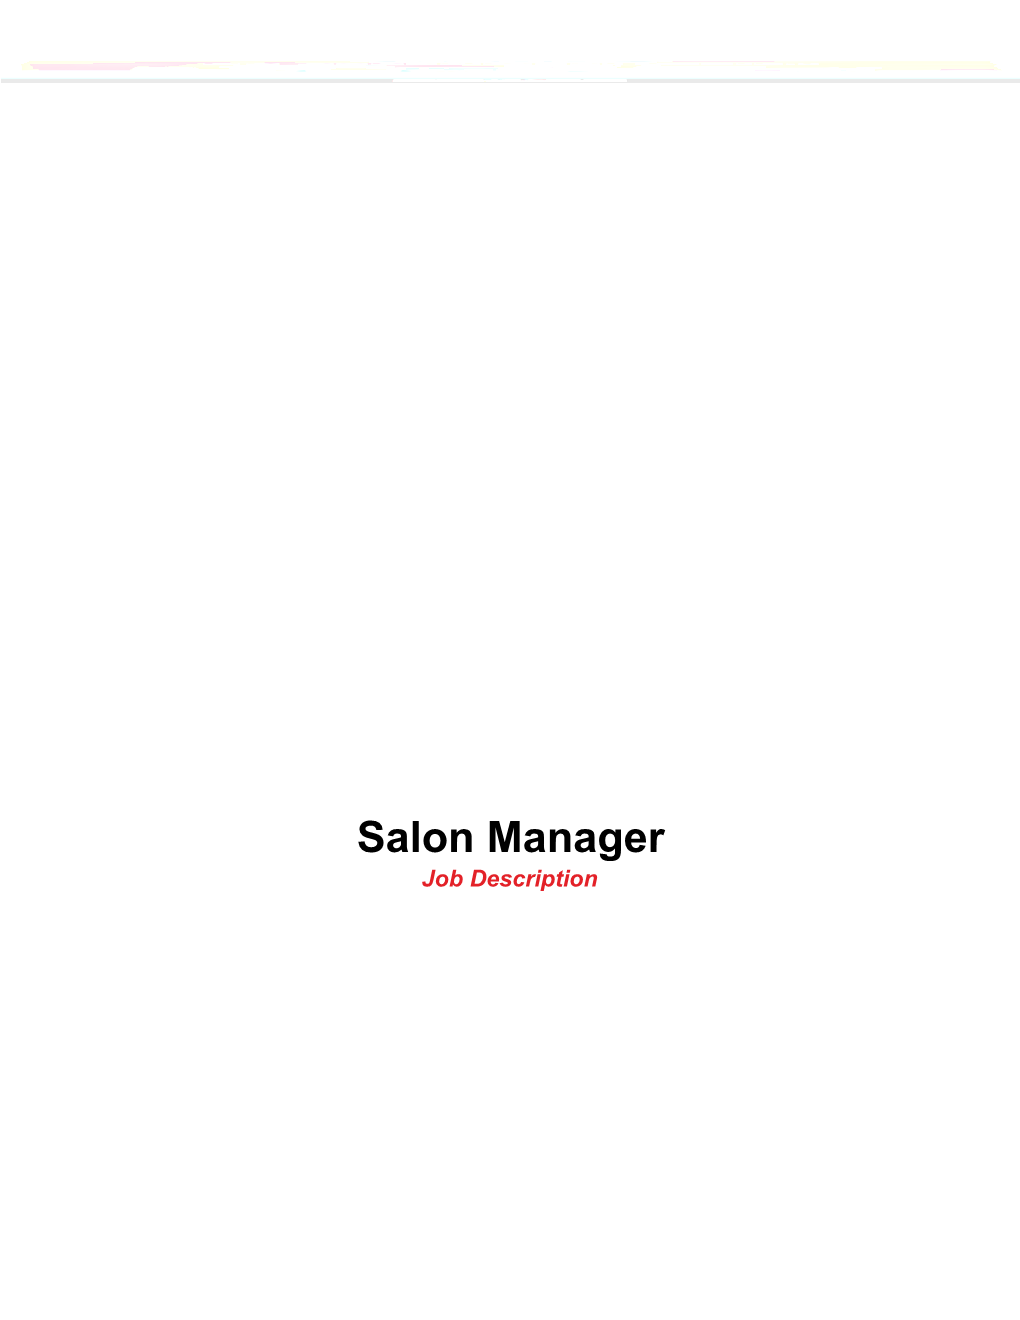 Job Description: Salon Manager